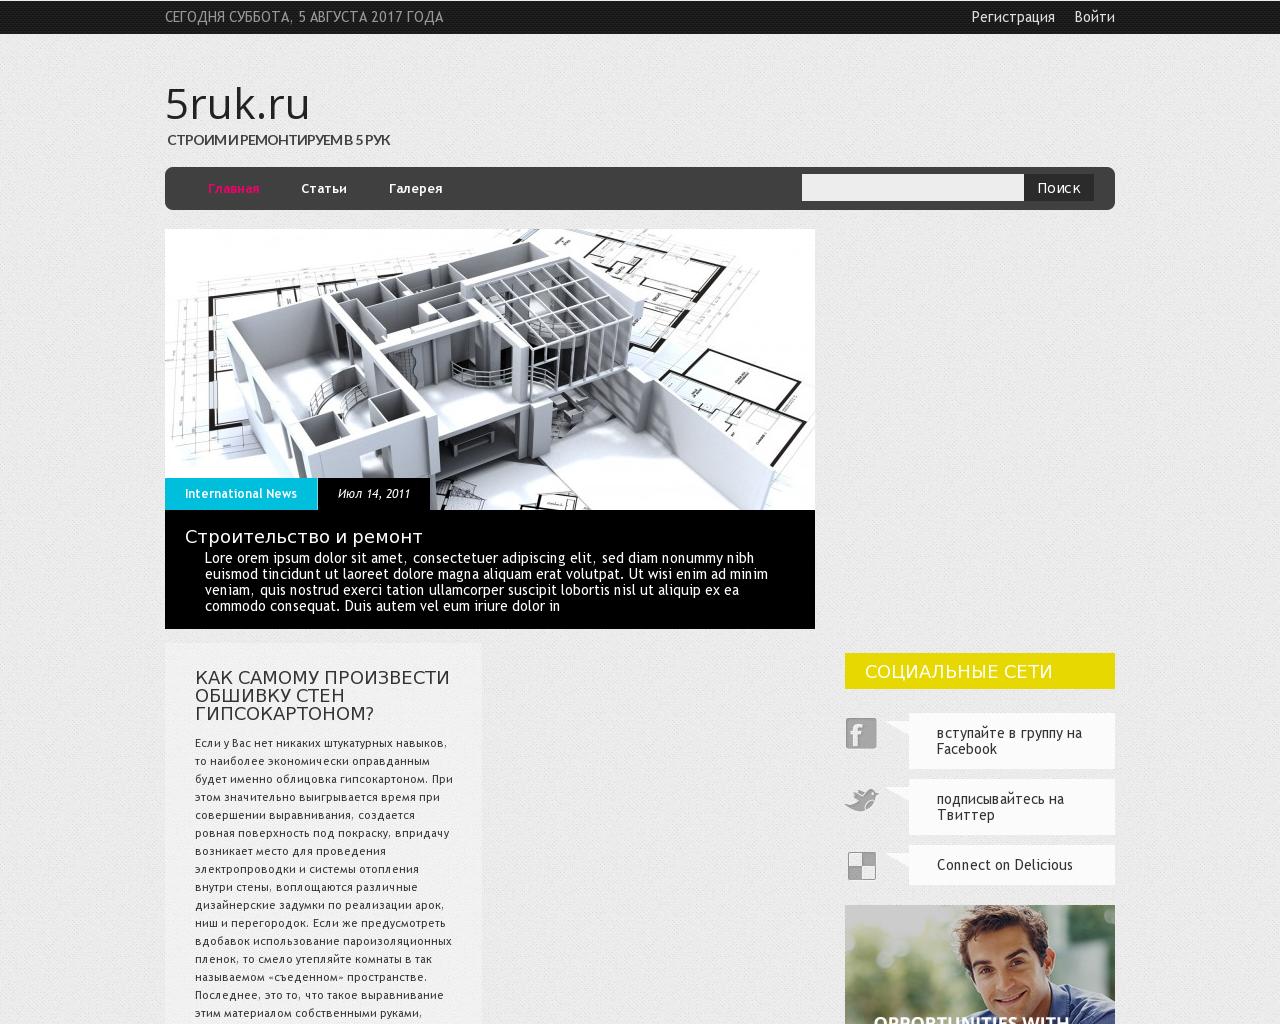 Изображение сайта 5ruk.ru в разрешении 1280x1024